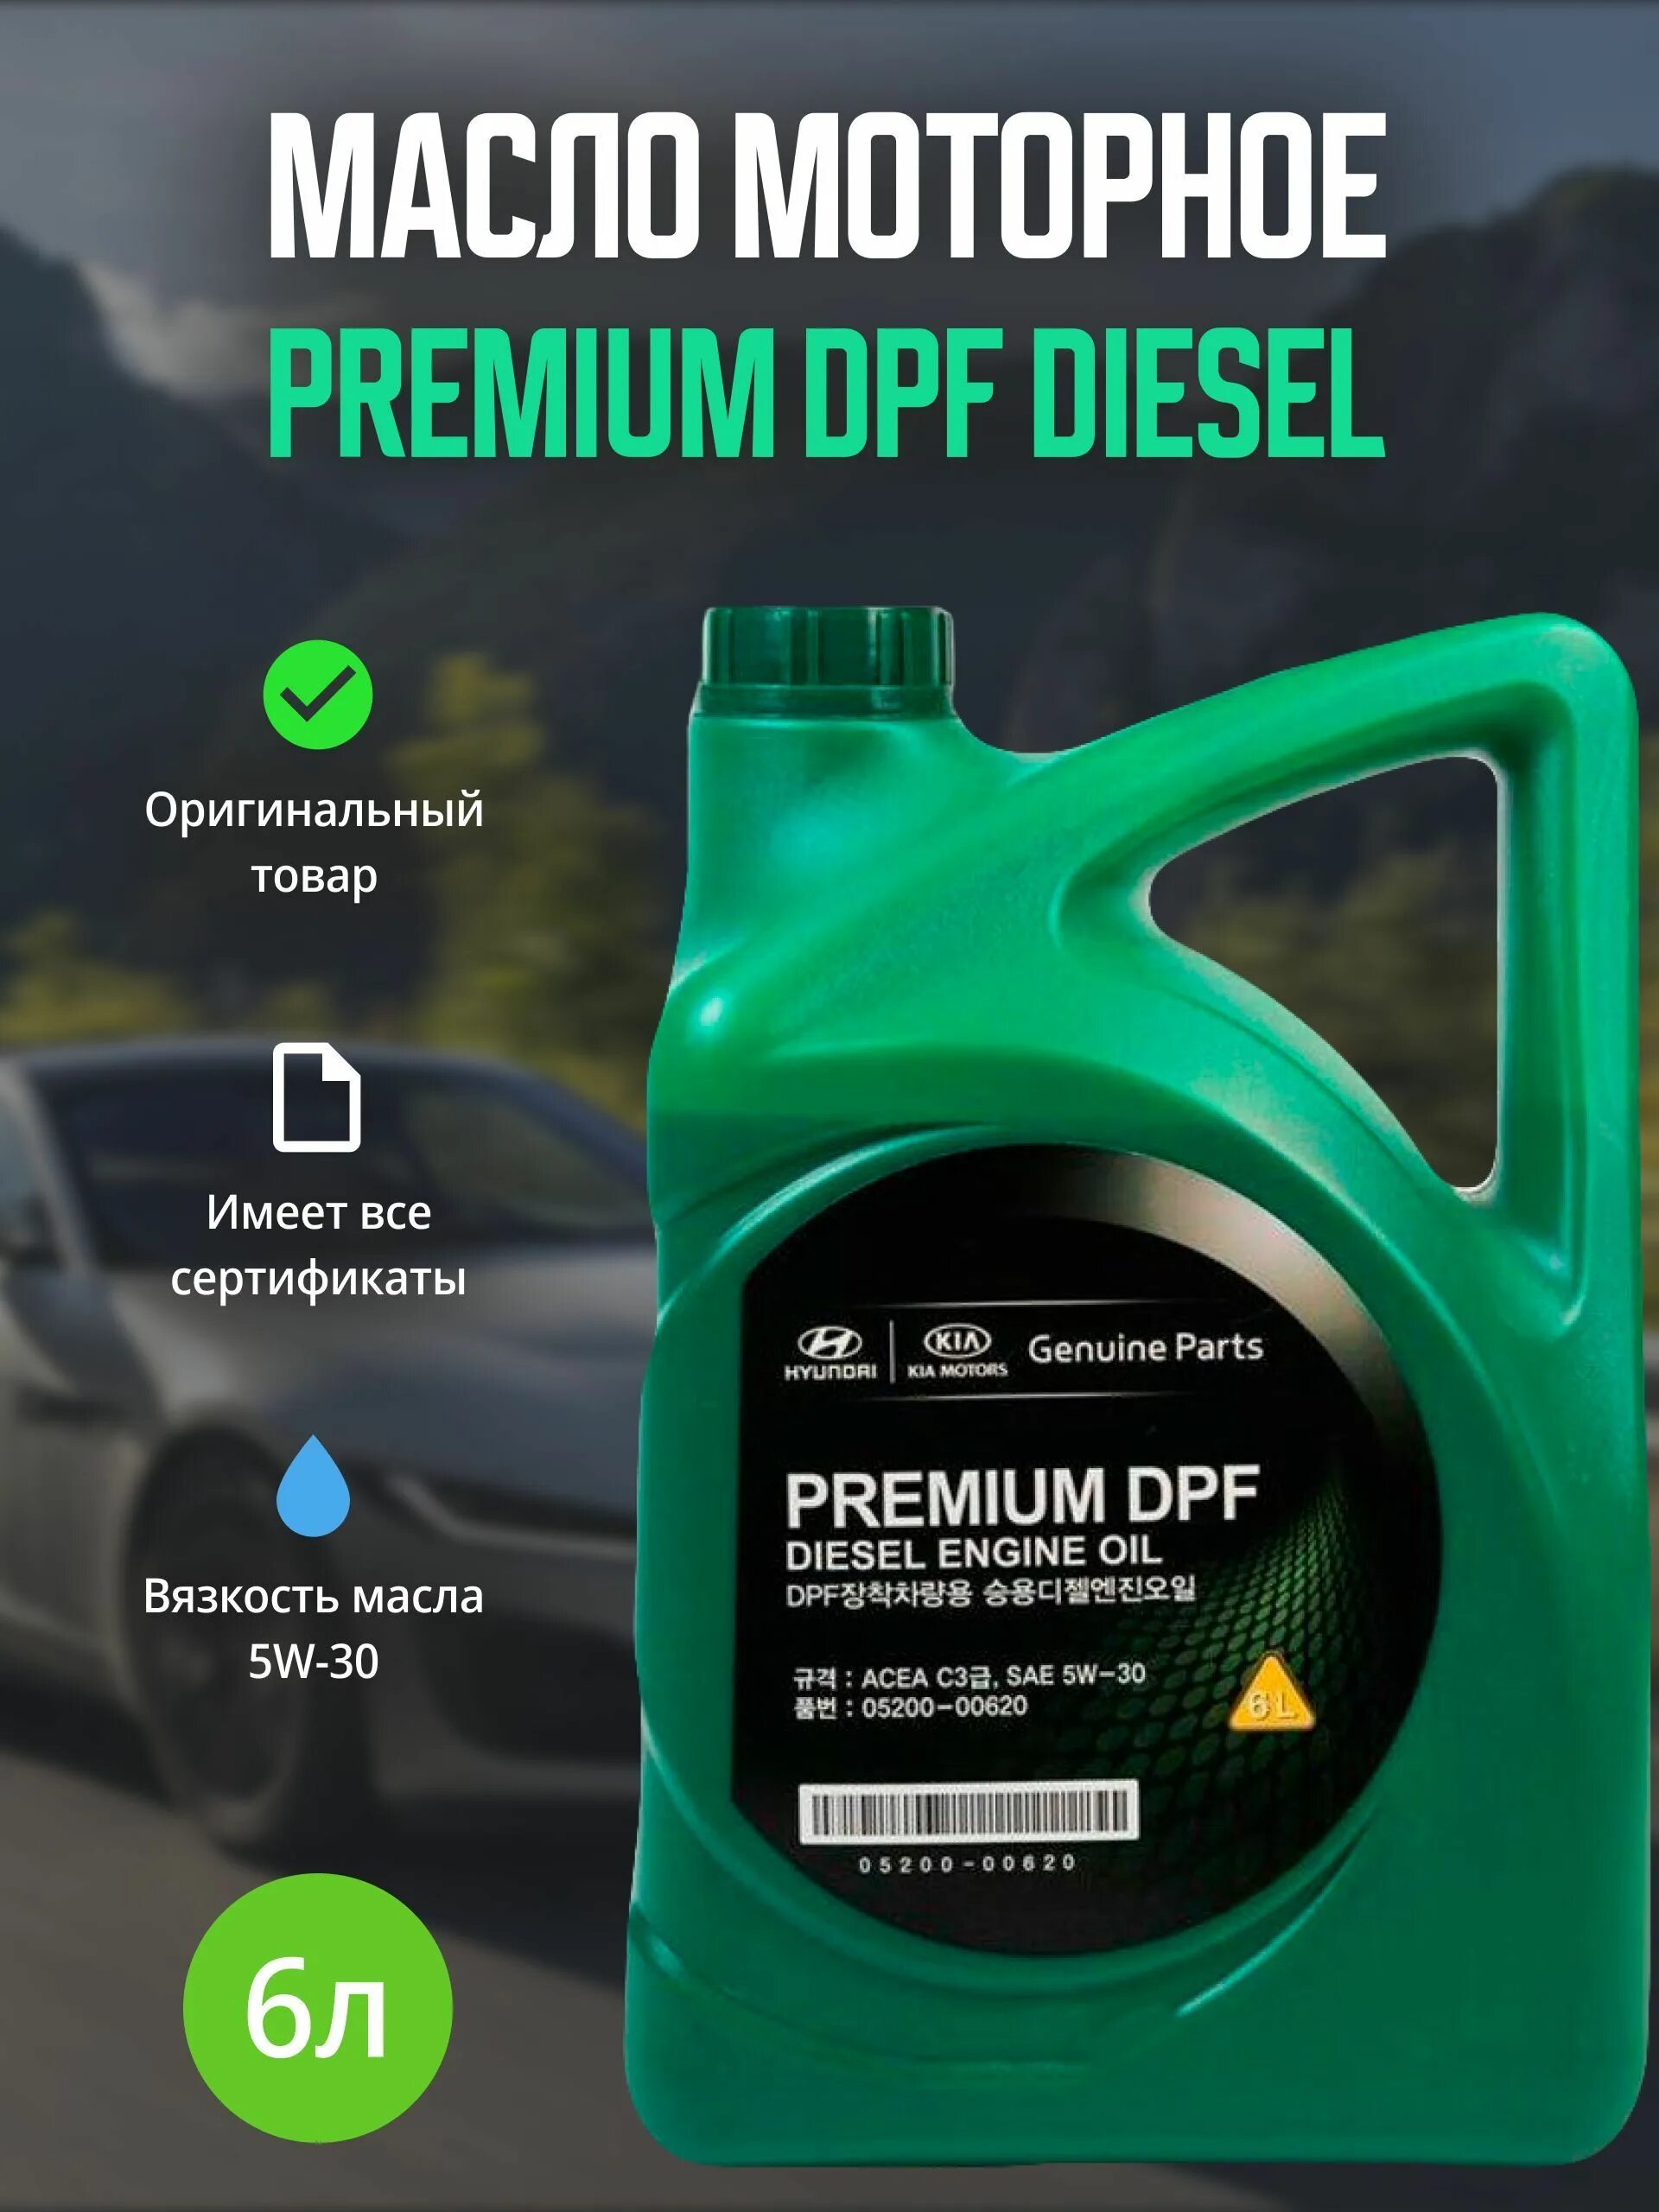 Premium DPF Diesel 5w-30. Hyundai Kia Premium DPF 5w-30 6 л. 05200-00620 5w30 масло моторное Premium DPF Diesel 6л. Hyundai. Масло Хендай оригинал дизель. Масло premium dpf diesel 5w 30